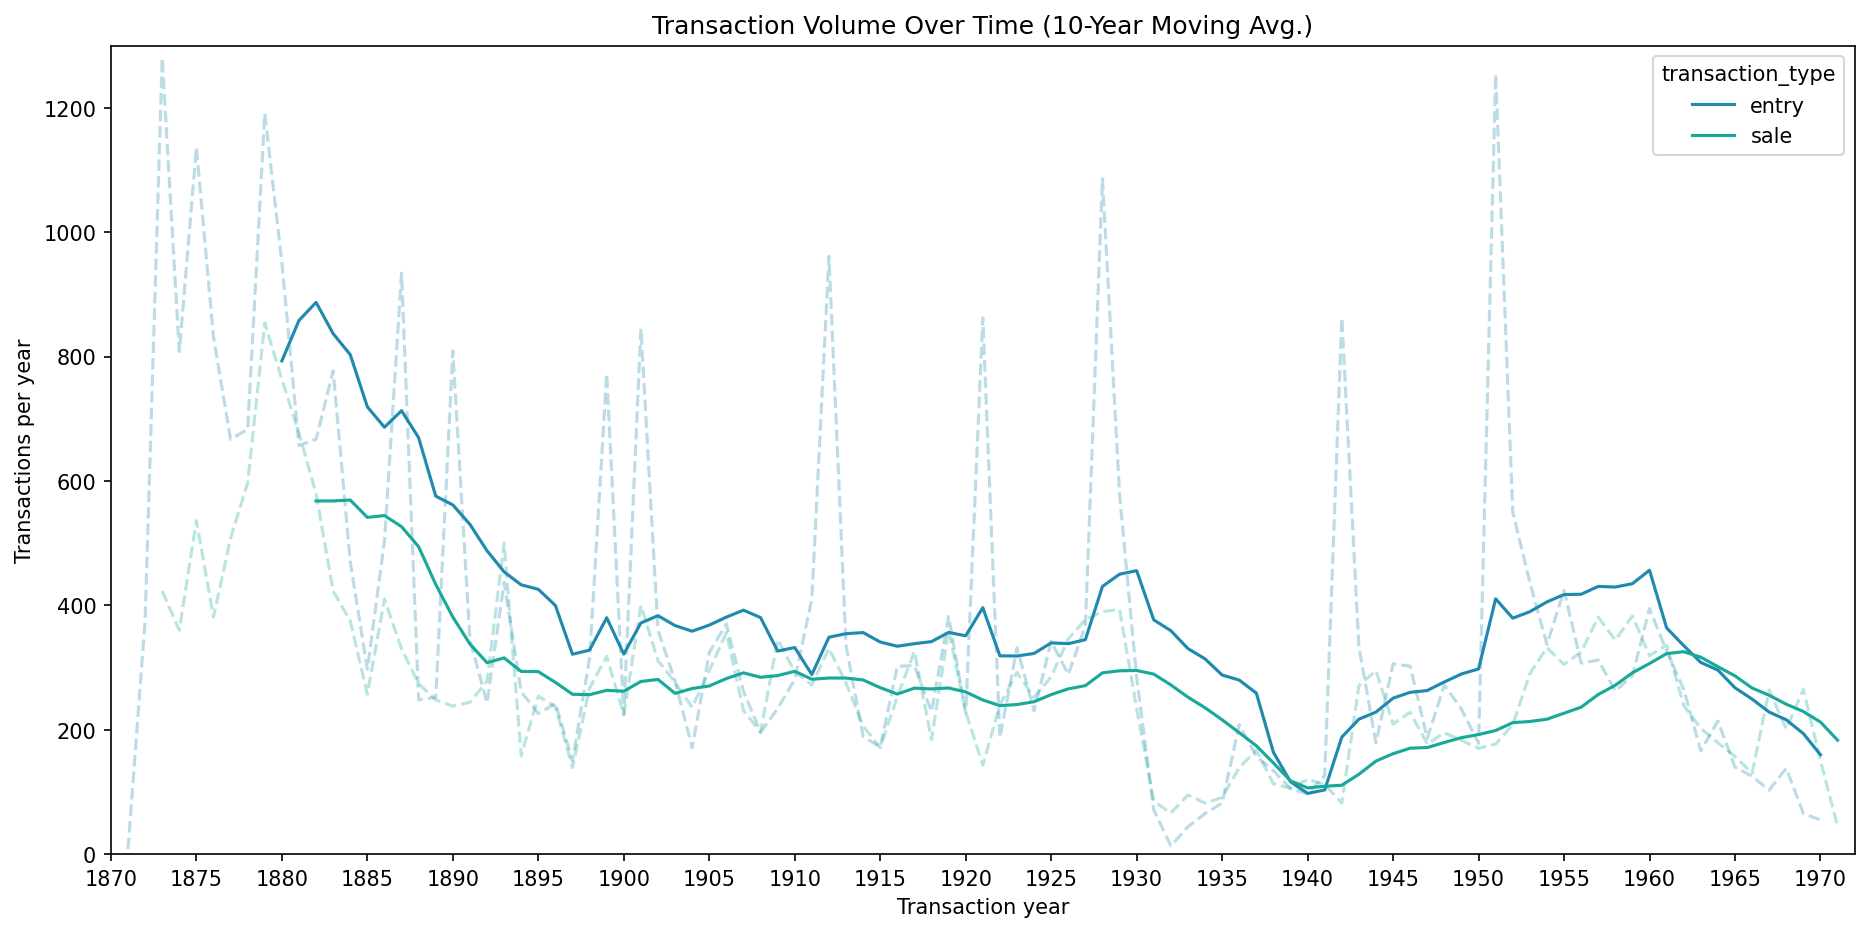 Knoedler Transaction Volume Over Time